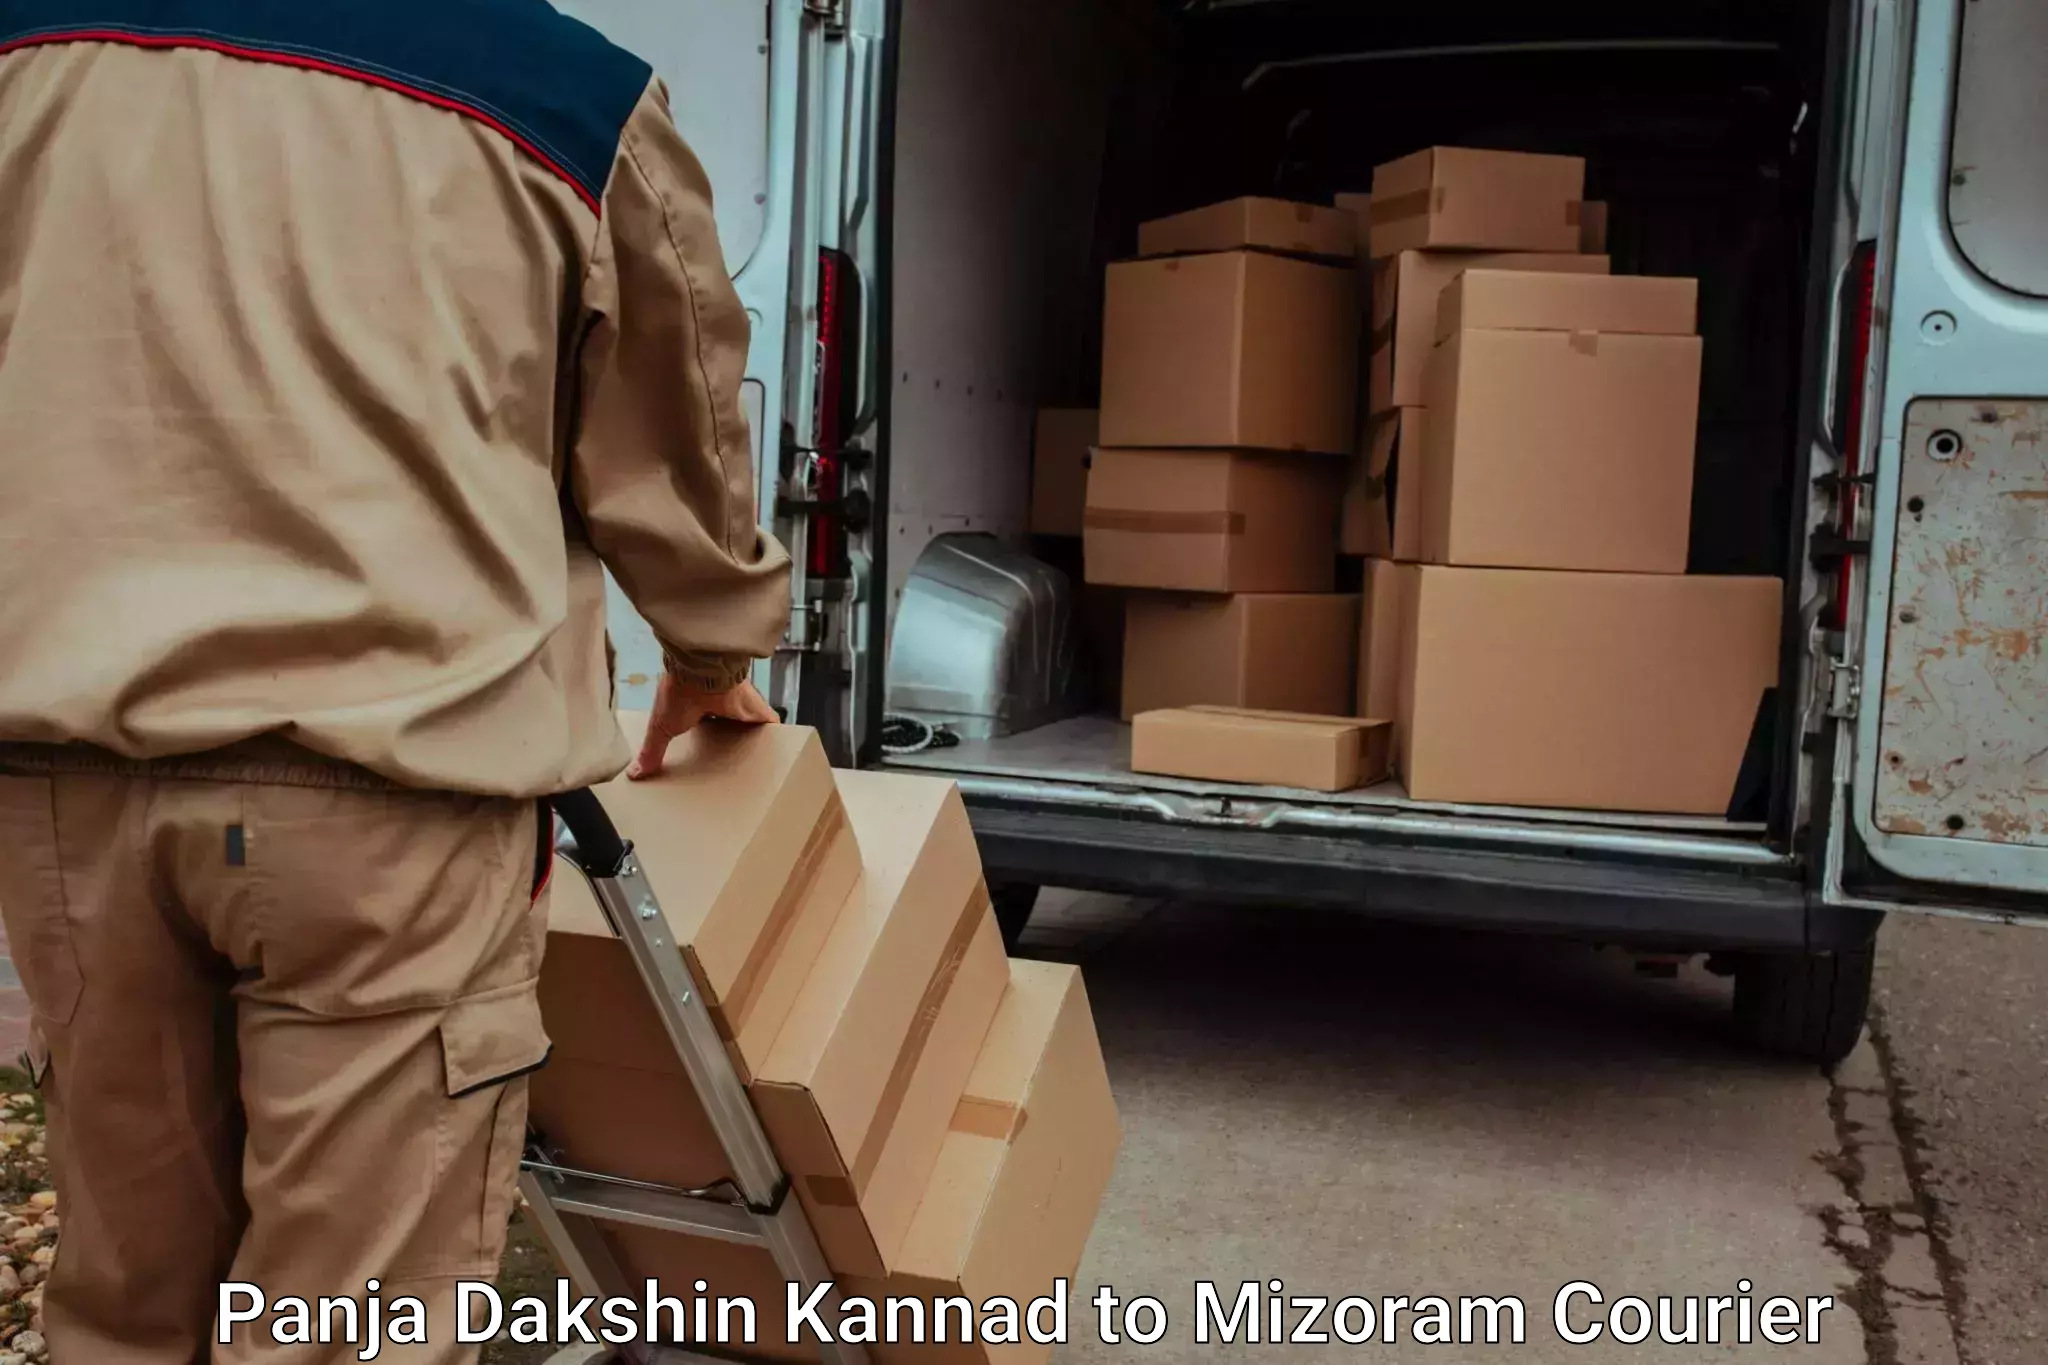 Luggage shipping planner Panja Dakshin Kannad to Thenzawl